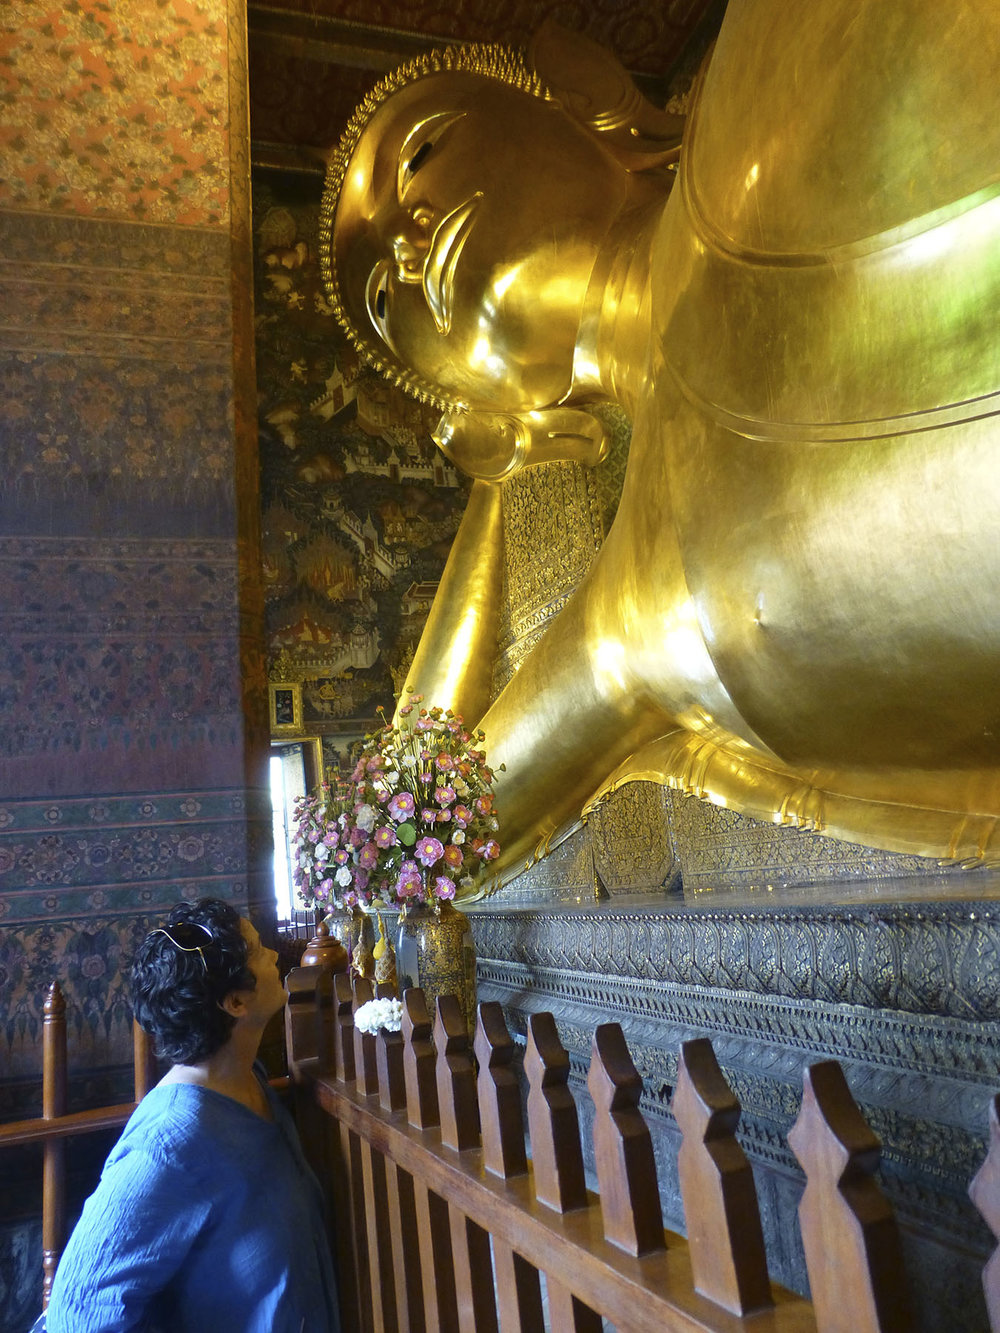 Recumbent Buddha